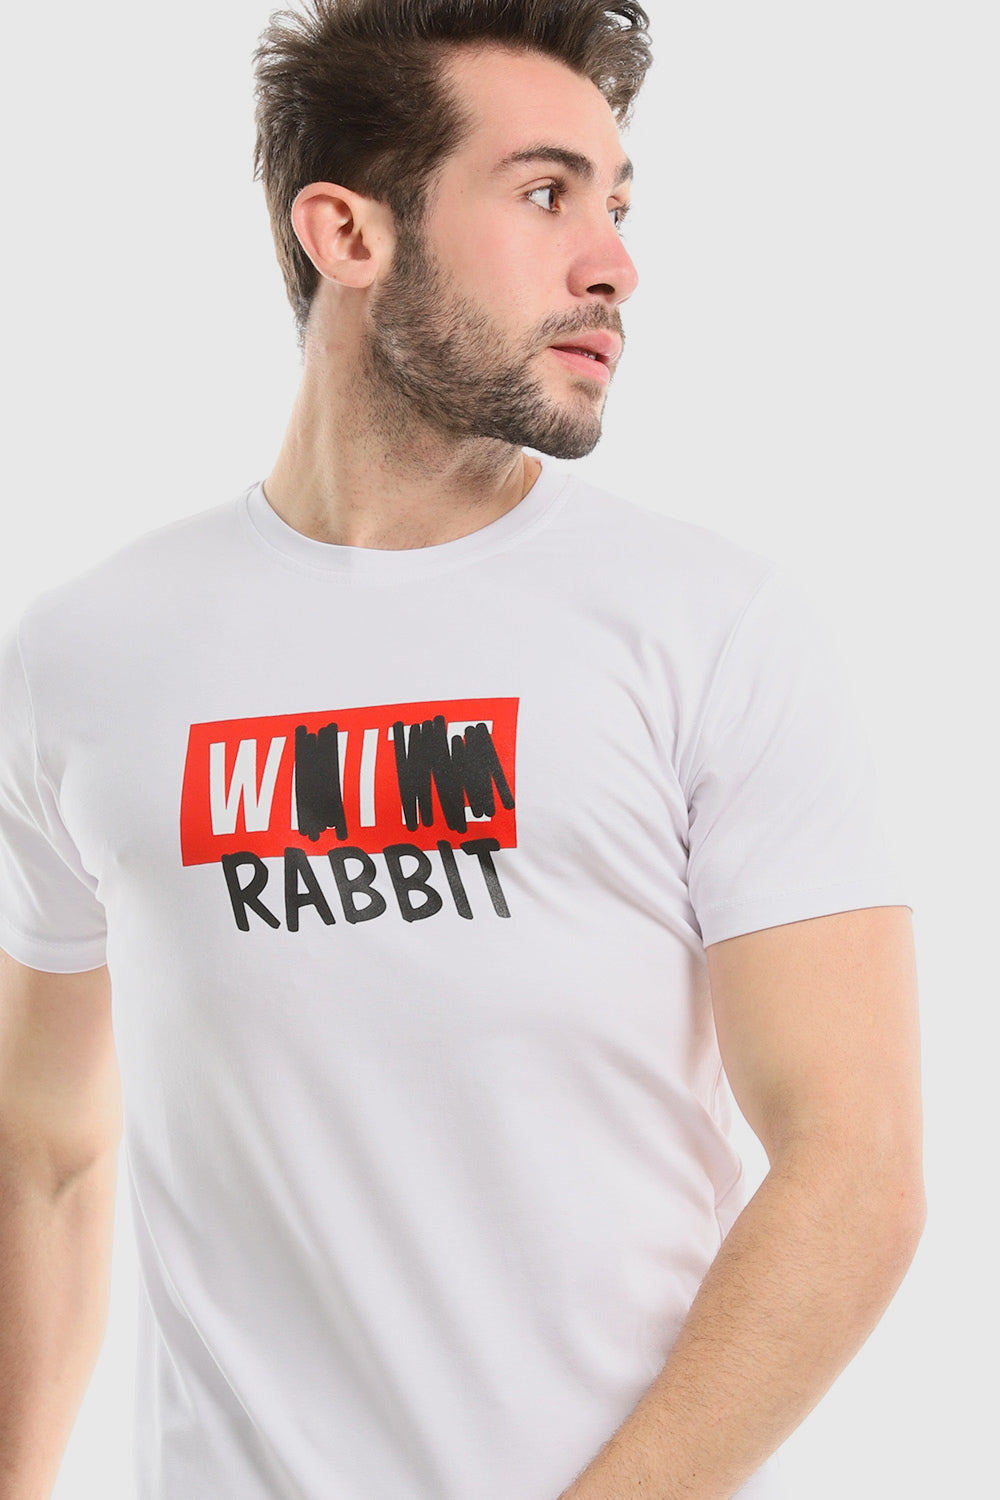 طباعة "Rabbit" باللون الفحمي مُعاد تحريرها فوق تي شيرت أسود سهل الارتداء